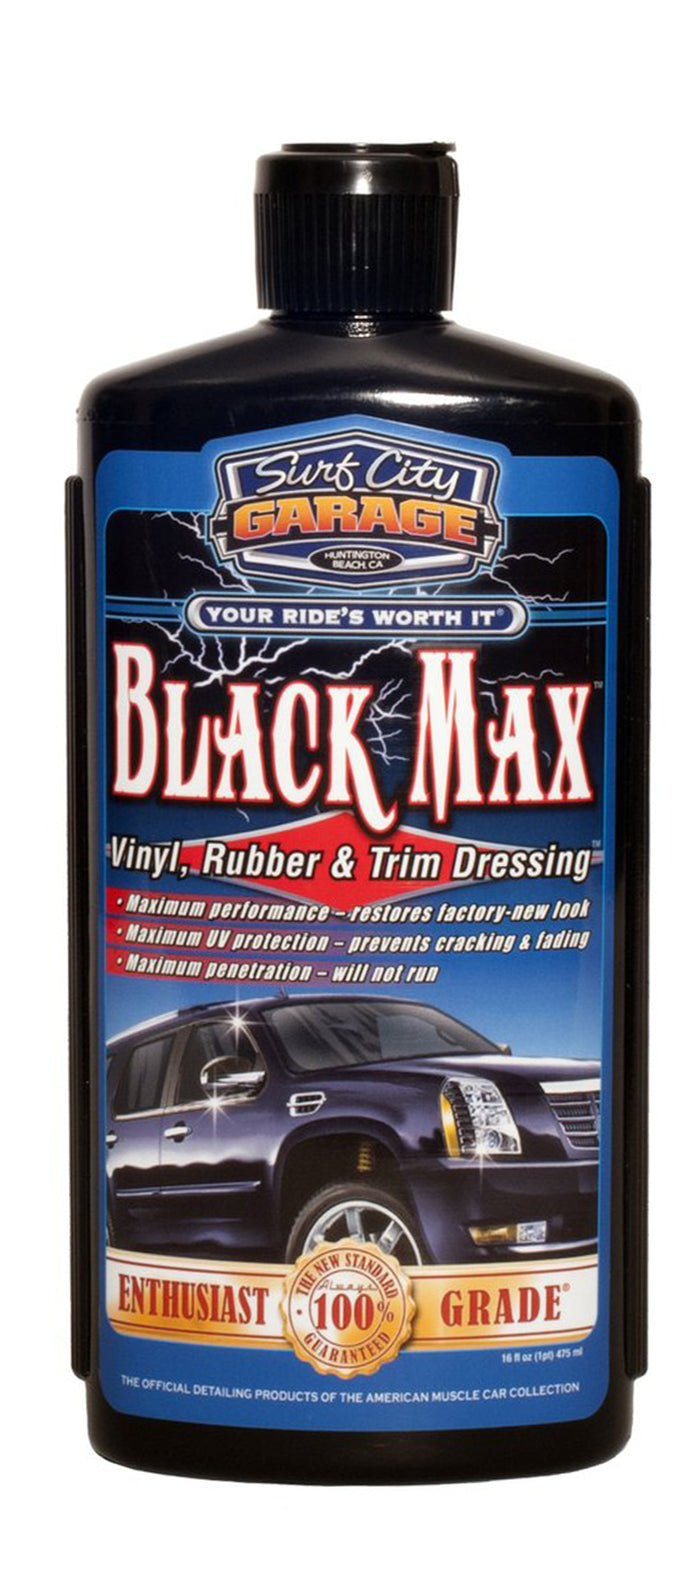 Shldybc Black Wax Black Special Car Wax New Car Wax Maintenance Polishing  Wax Motorcycle Waxing Solid Coating, Car Accessories on CLearance 